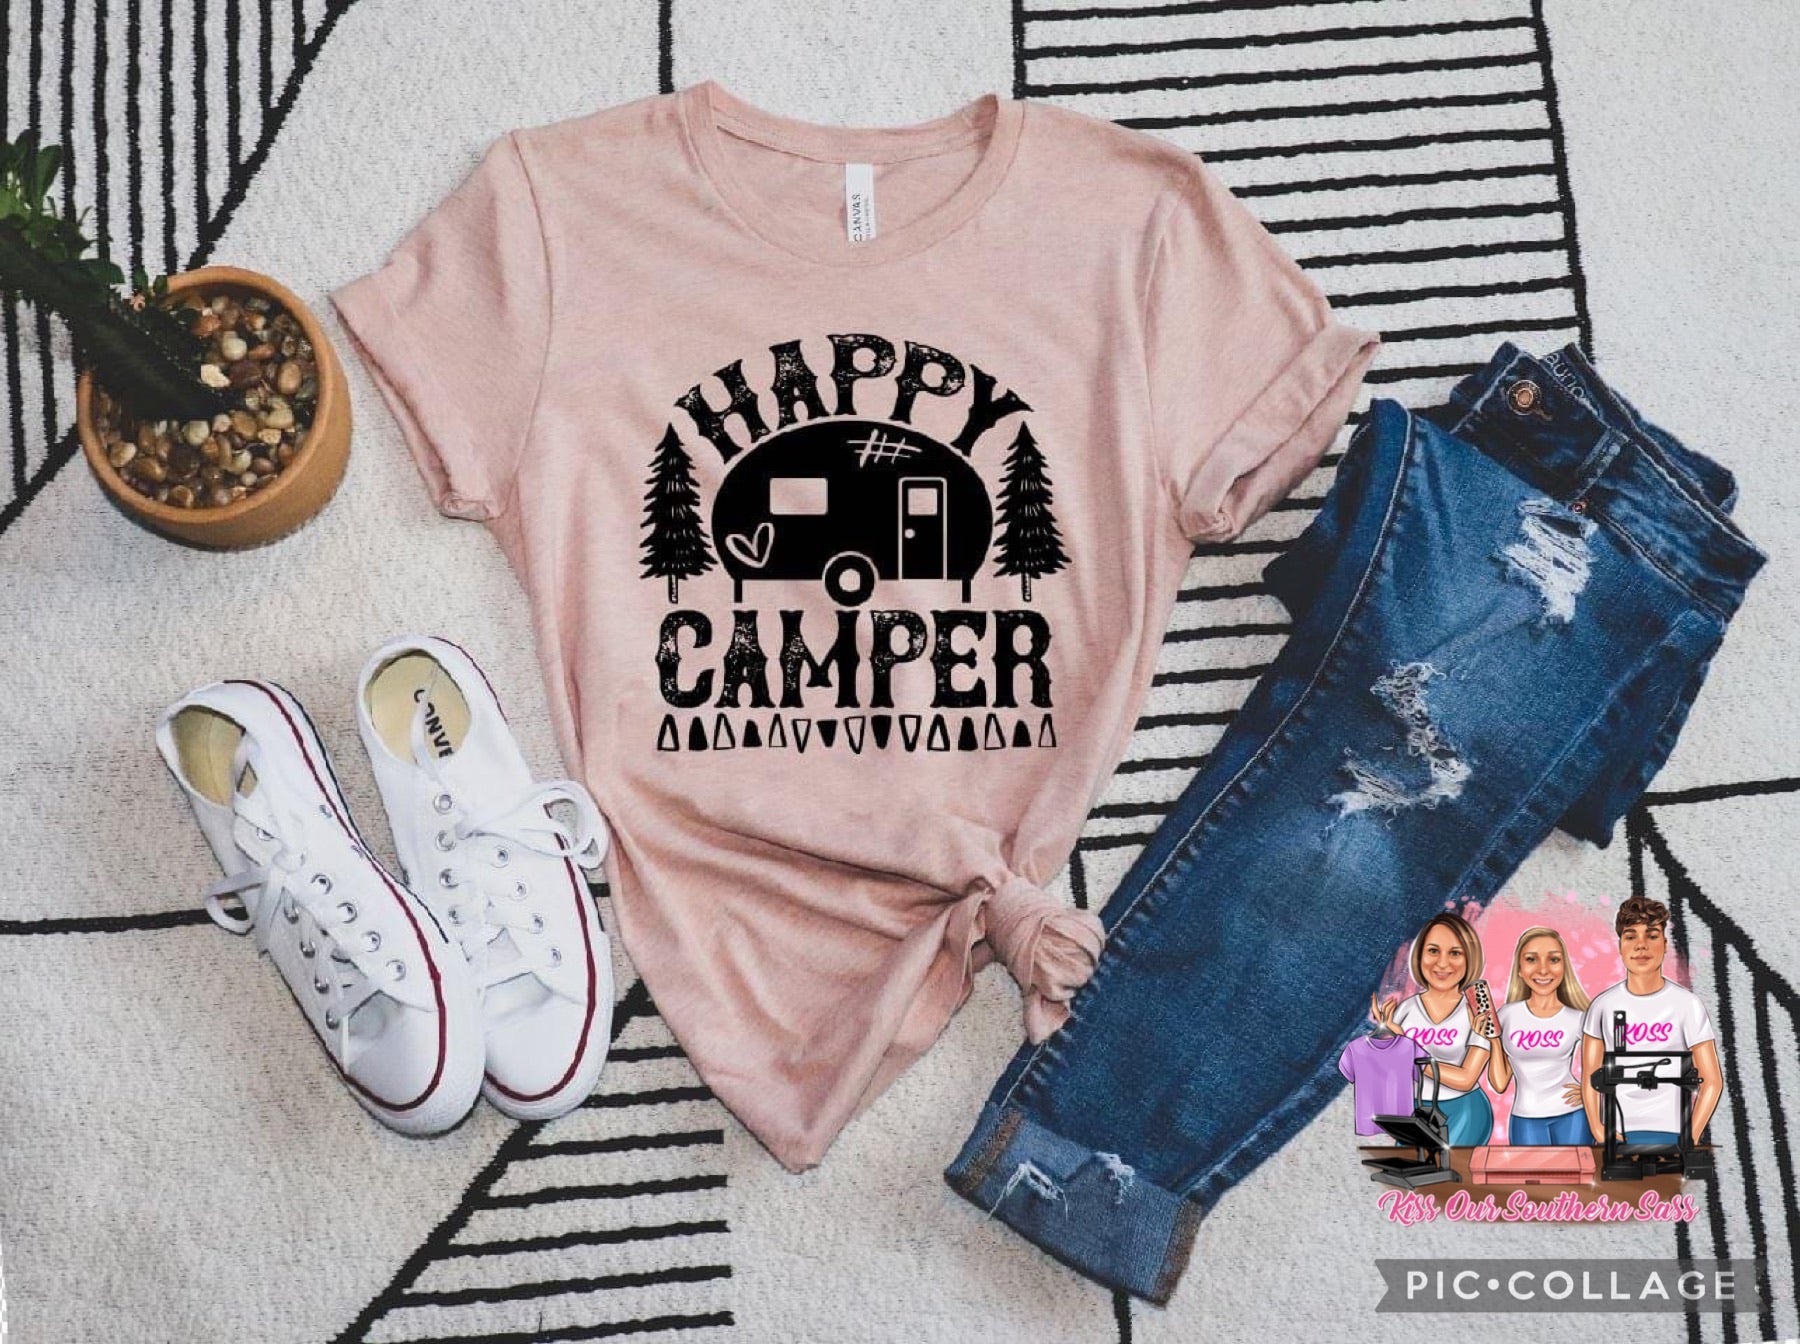 Happy Camper (camper)